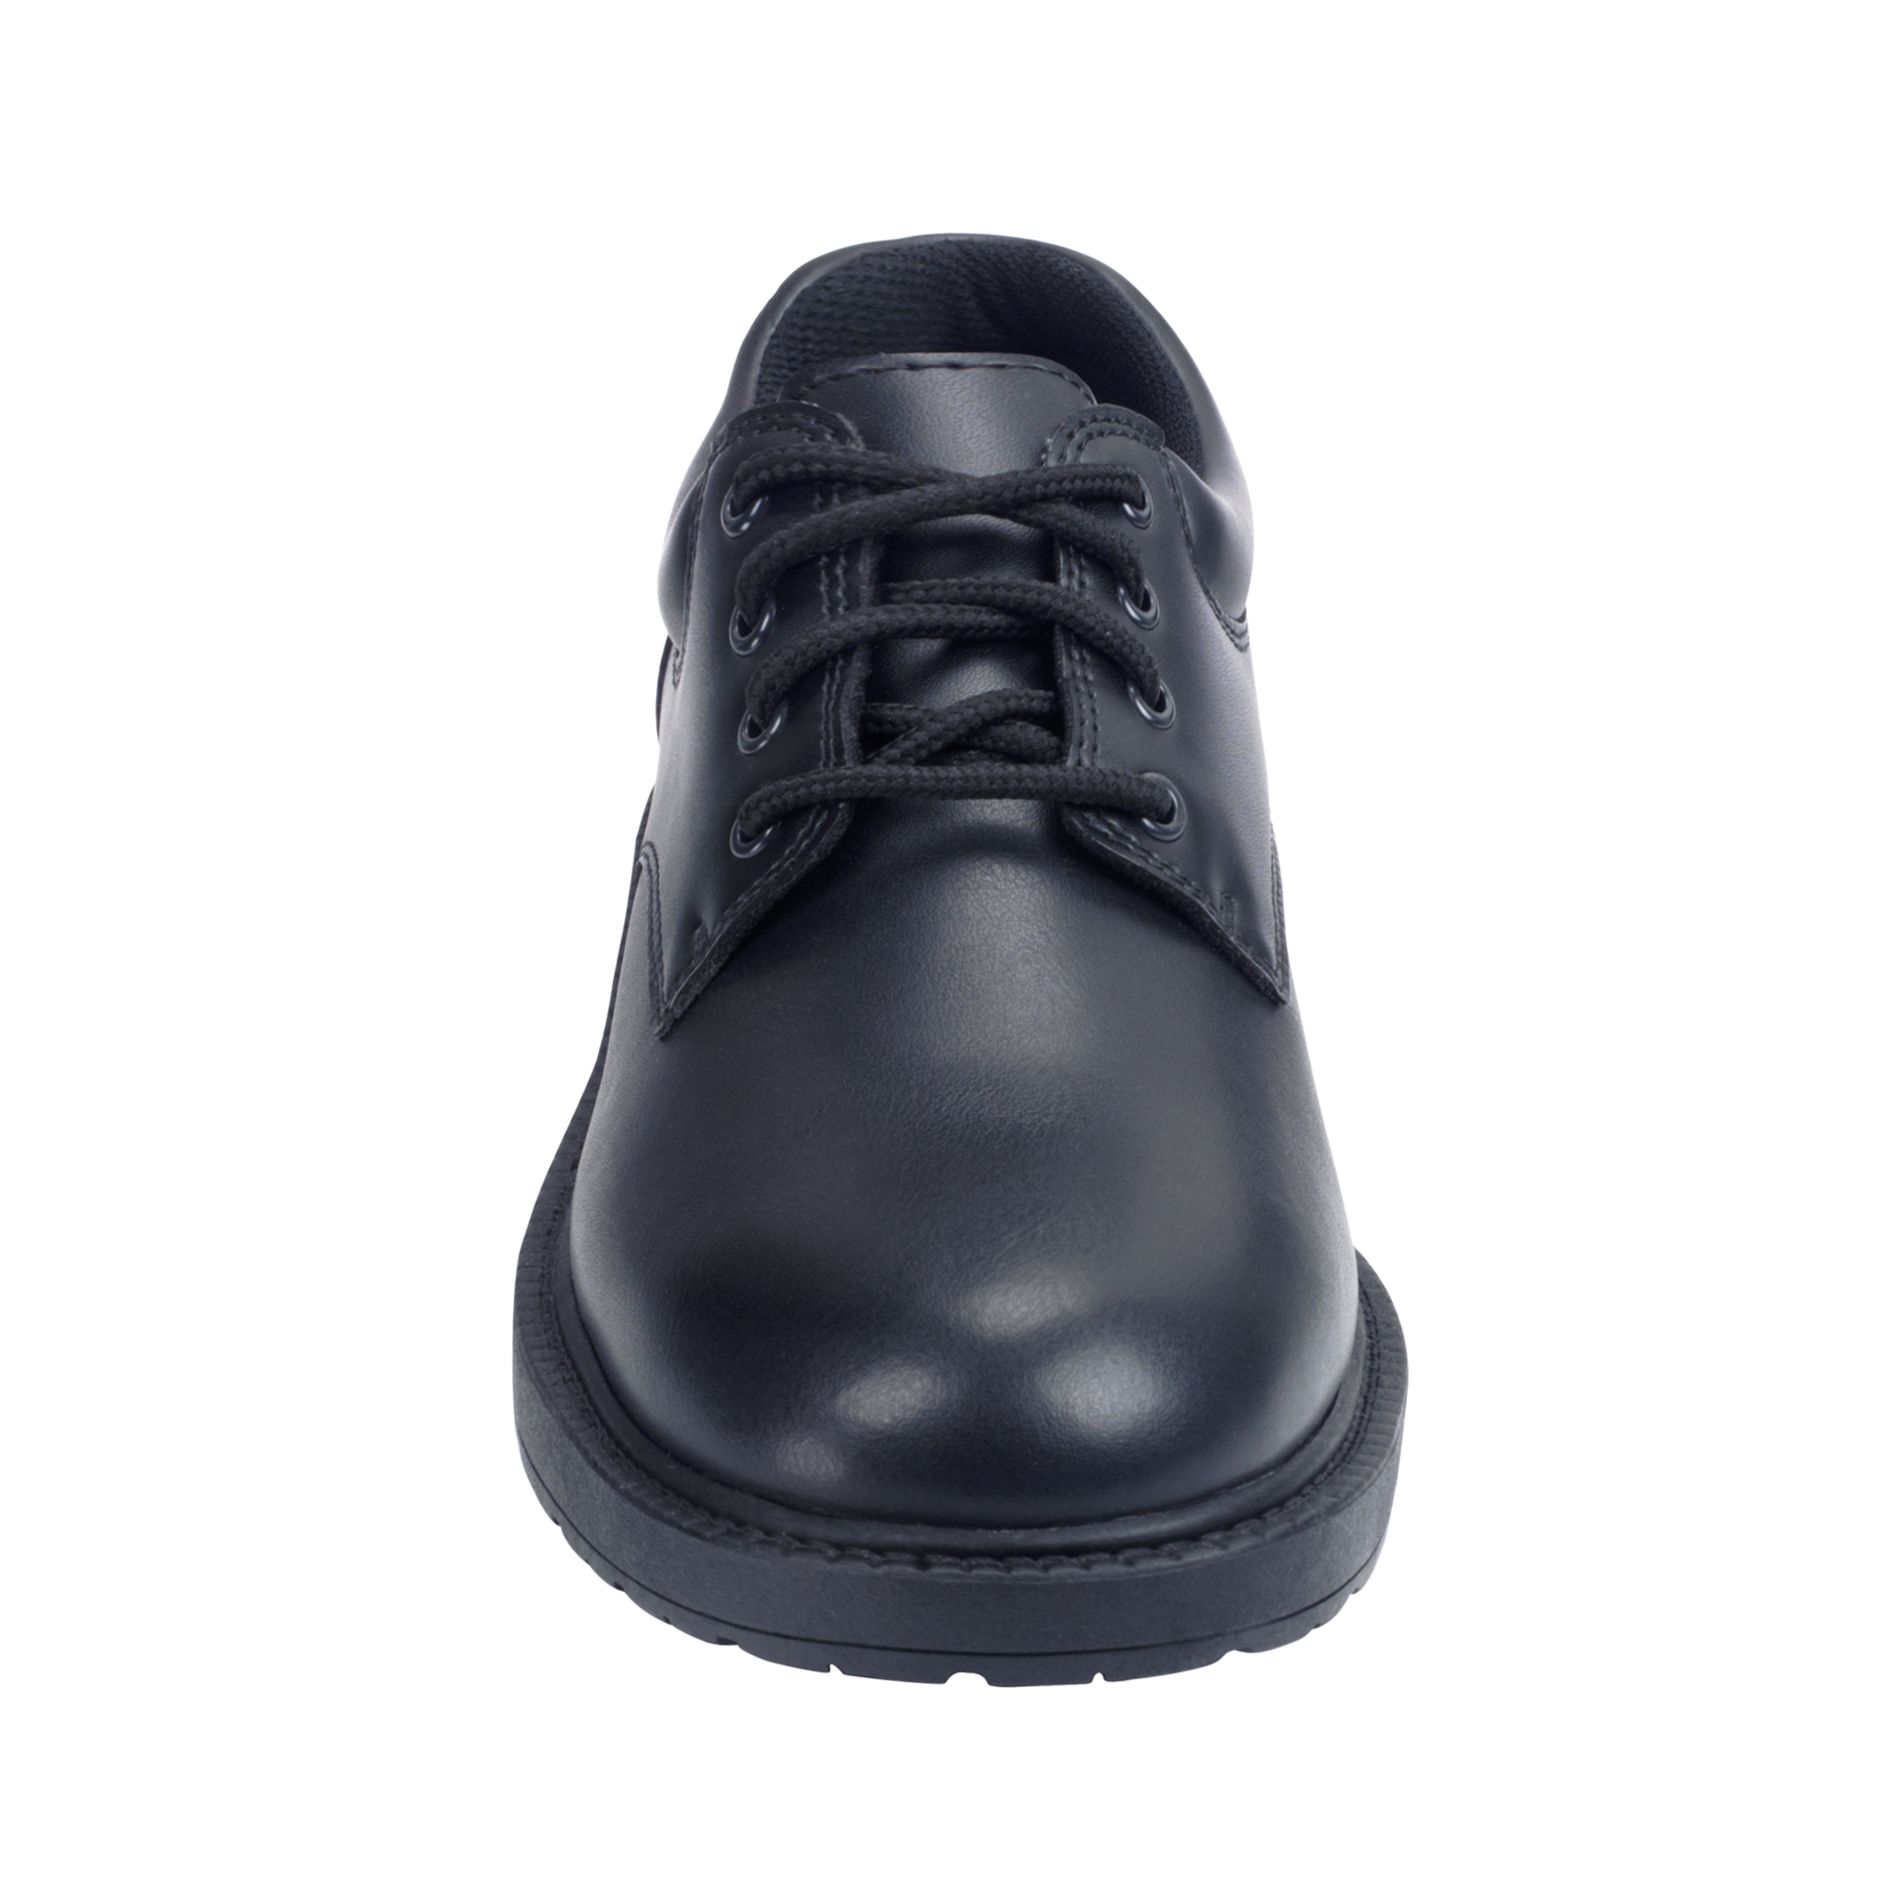 safetrax slip resistant shoes